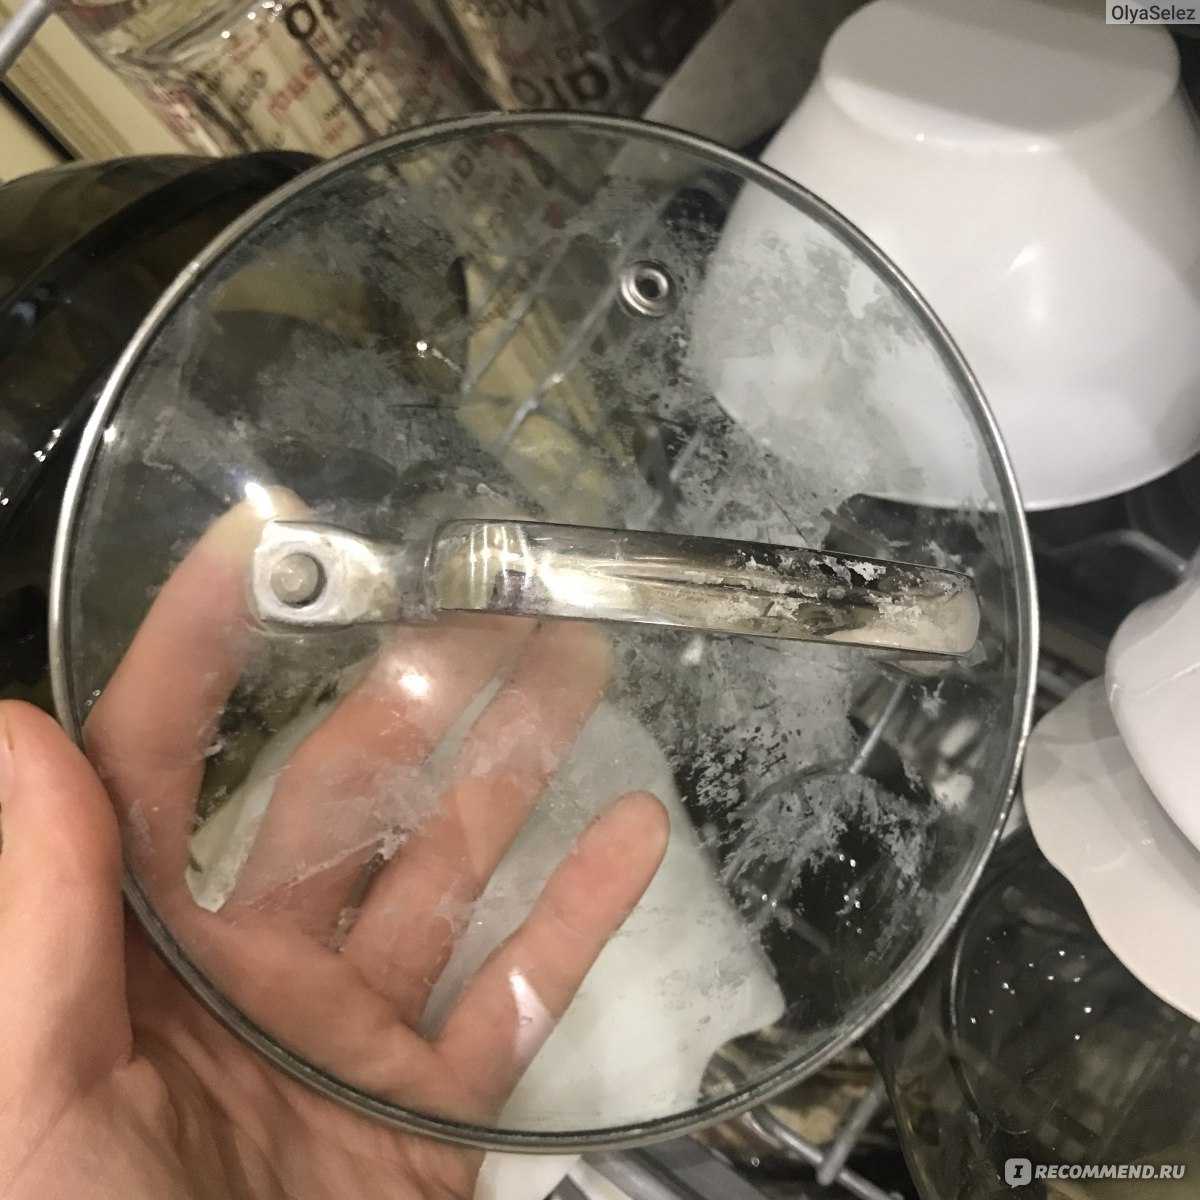 Почему налет на посуде после посудомоечной машины. Белый налет на посуде и в посудомоечной машине. Налёт на посуде после посудомойки. После посудомойки посуда в белом налете. Белый налет на стекле после посудомойки.